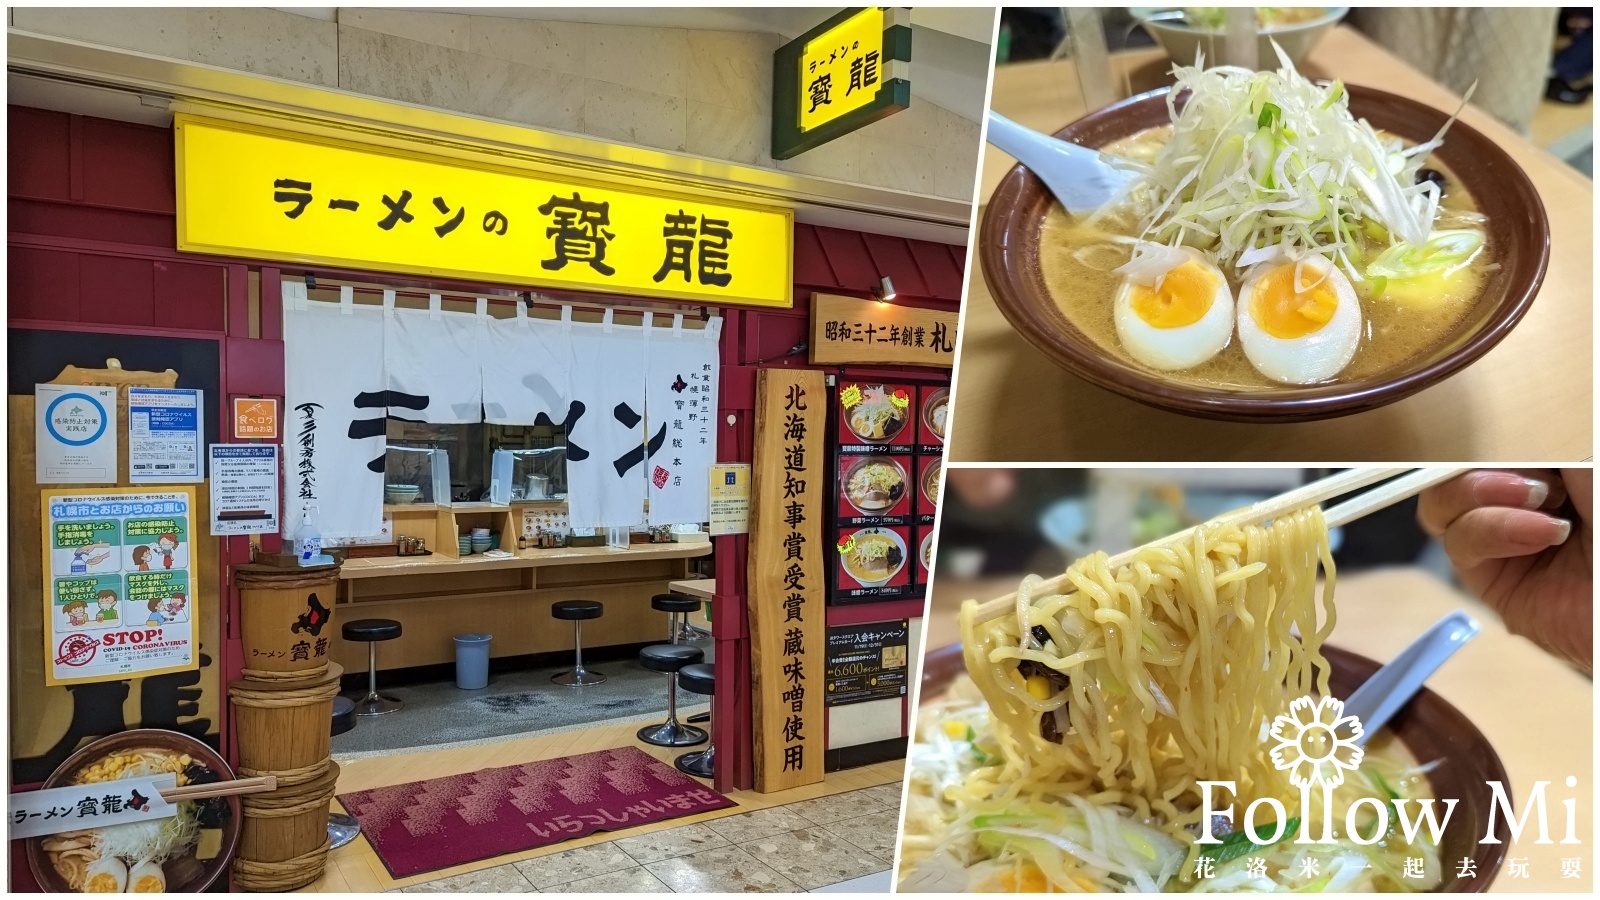 網站近期文章：北海道札幌美食推薦 寶龍拉麵 開業超過60年米其林指南推薦味增拉麵